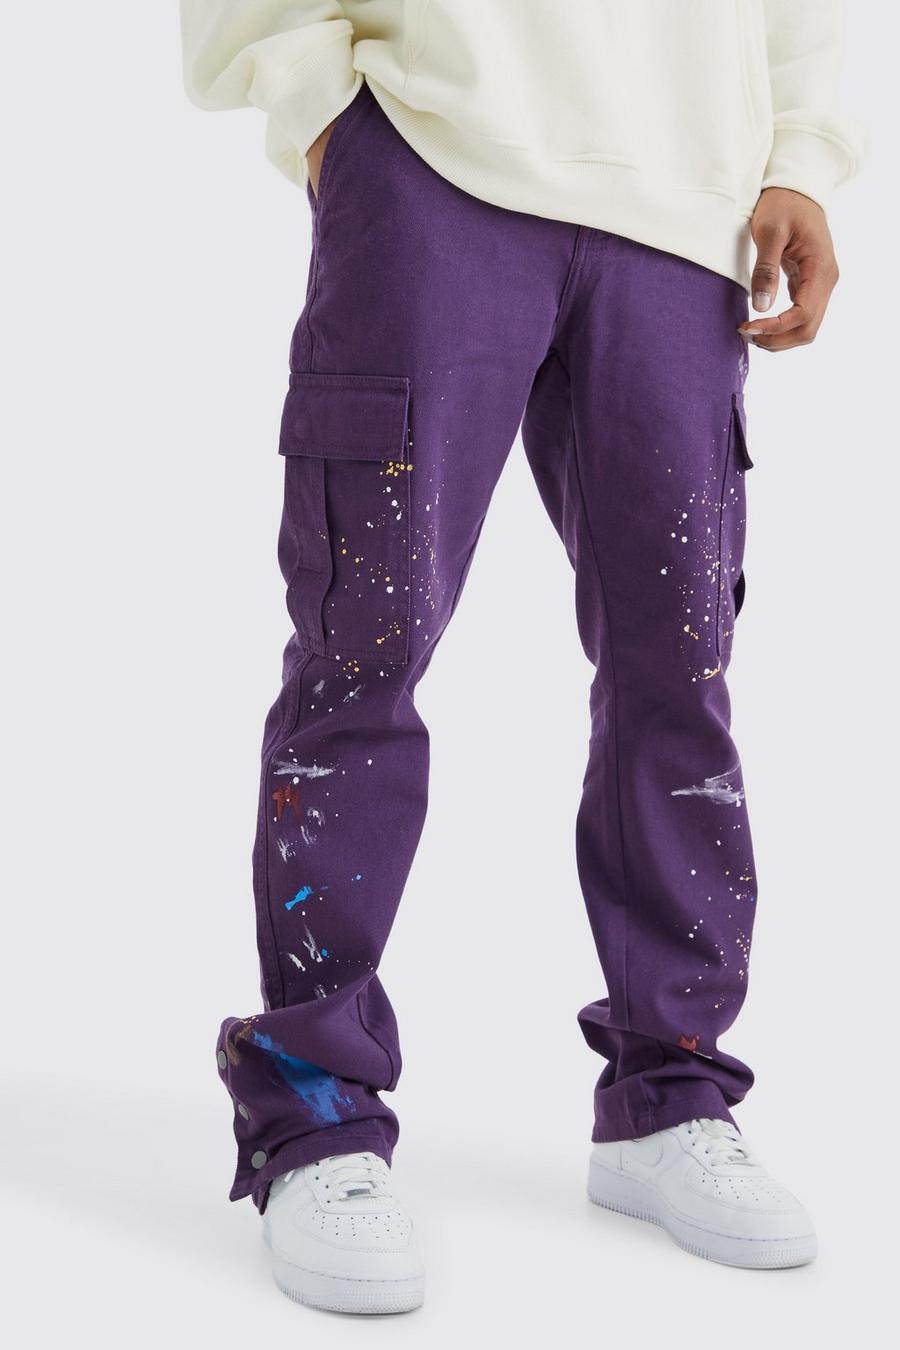 Pantaloni Cargo Slim Fit a zampa con bottoni a pressione sul fondo e schizzi di colore, Purple